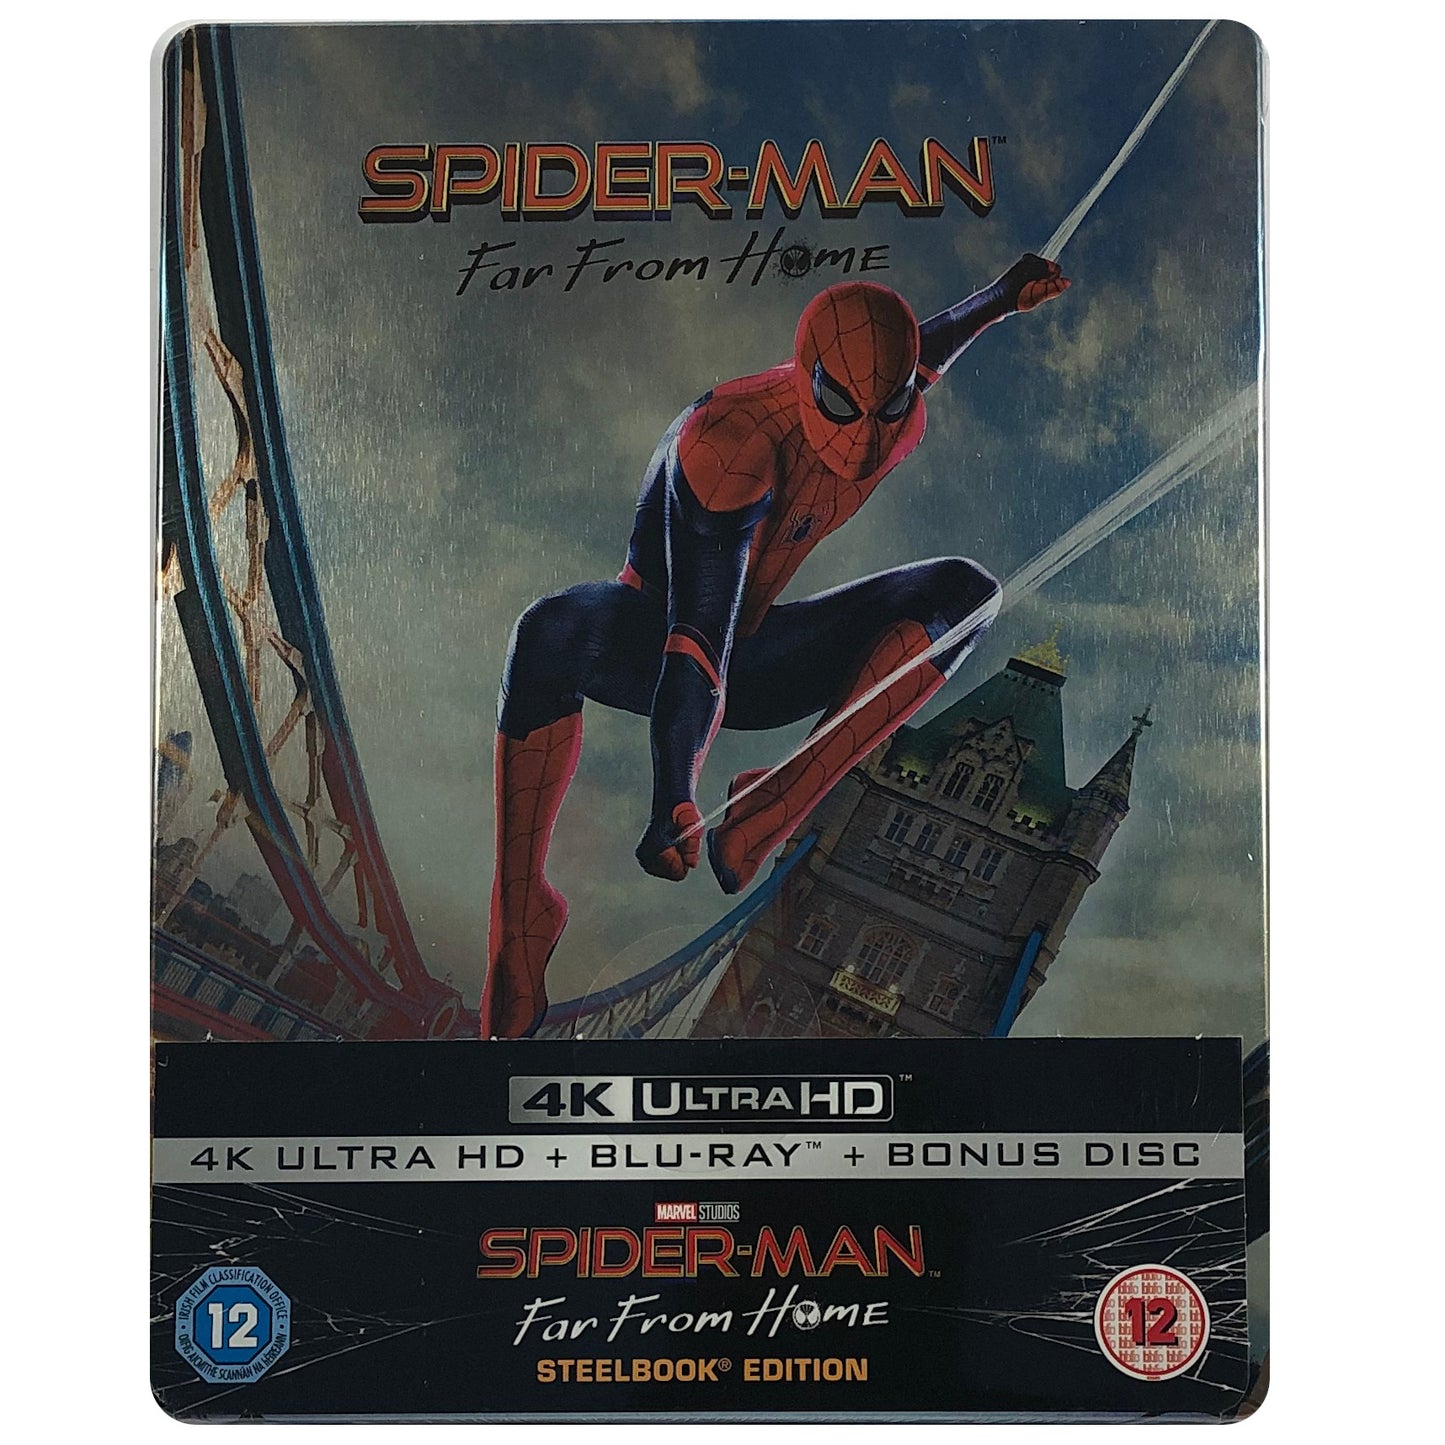 Spider-Man: Far From Home 4K Steelbook